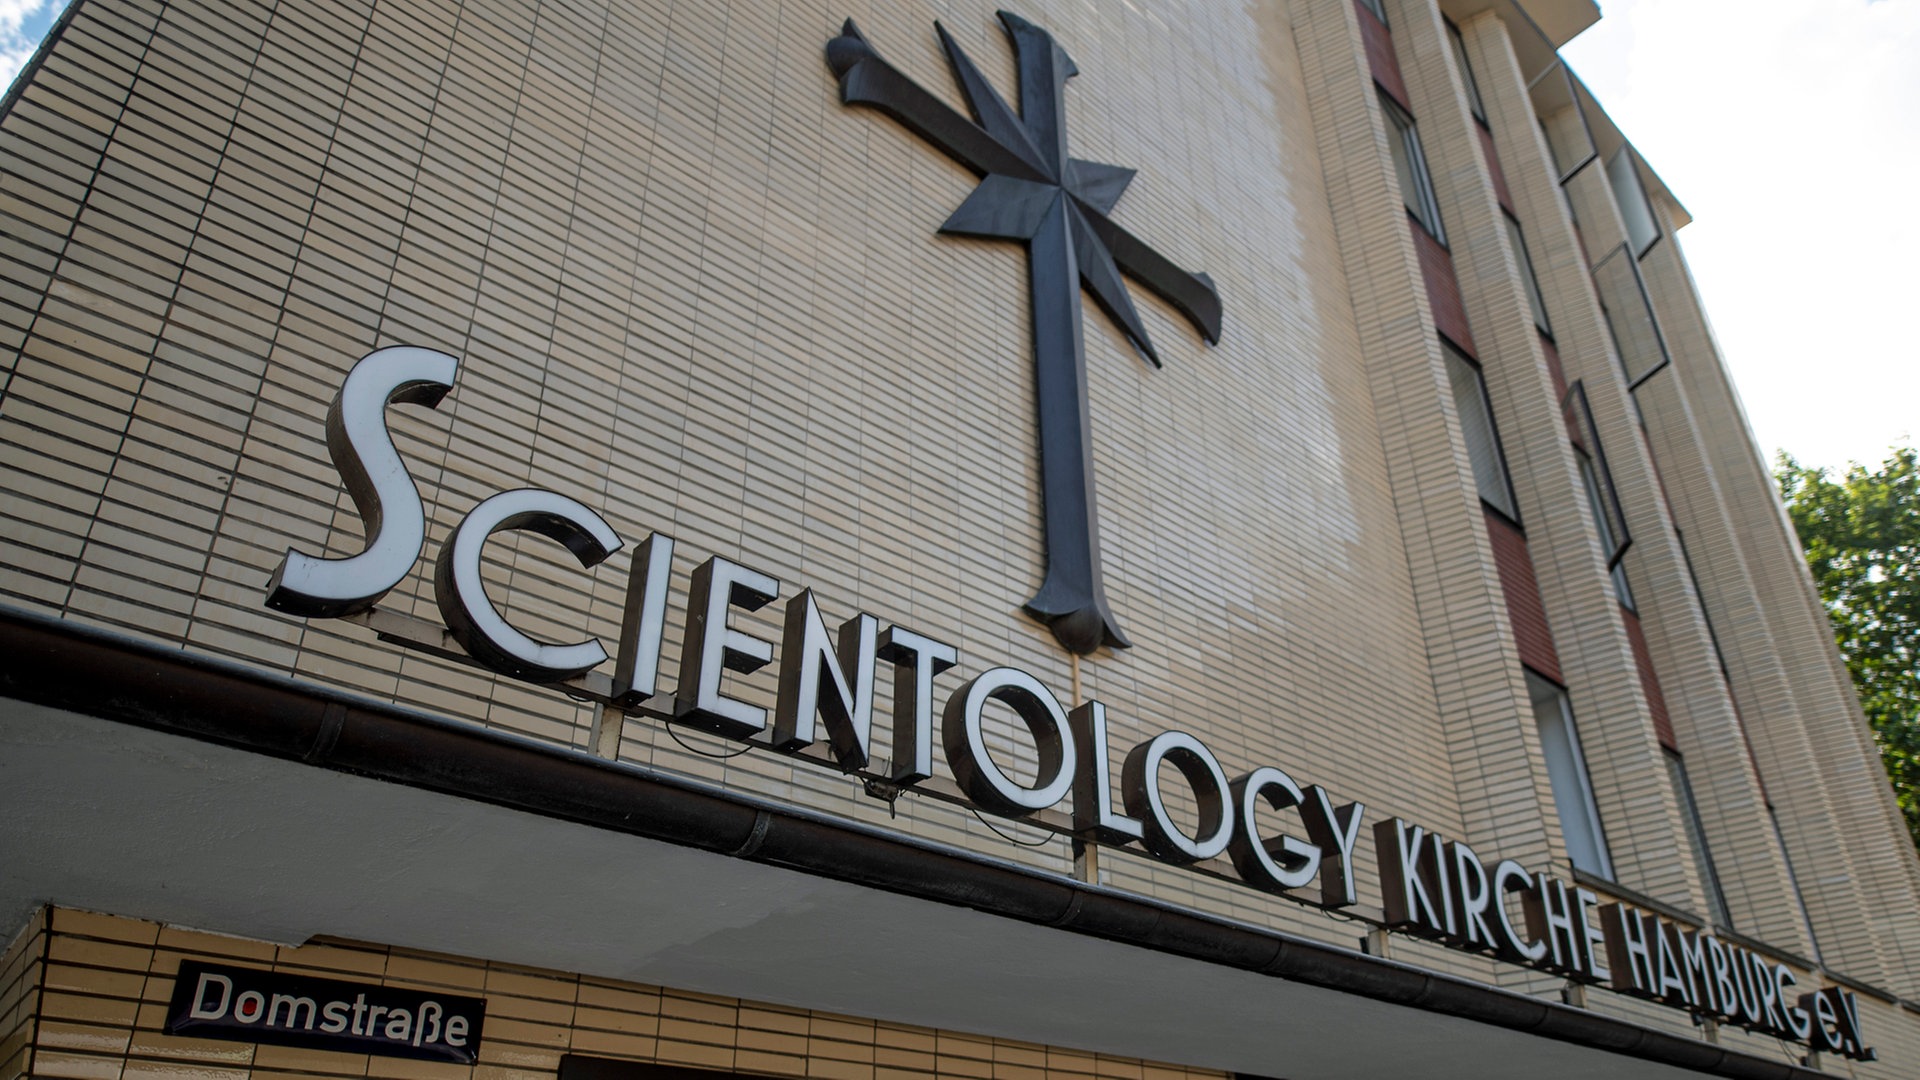 Was Ist Scientology